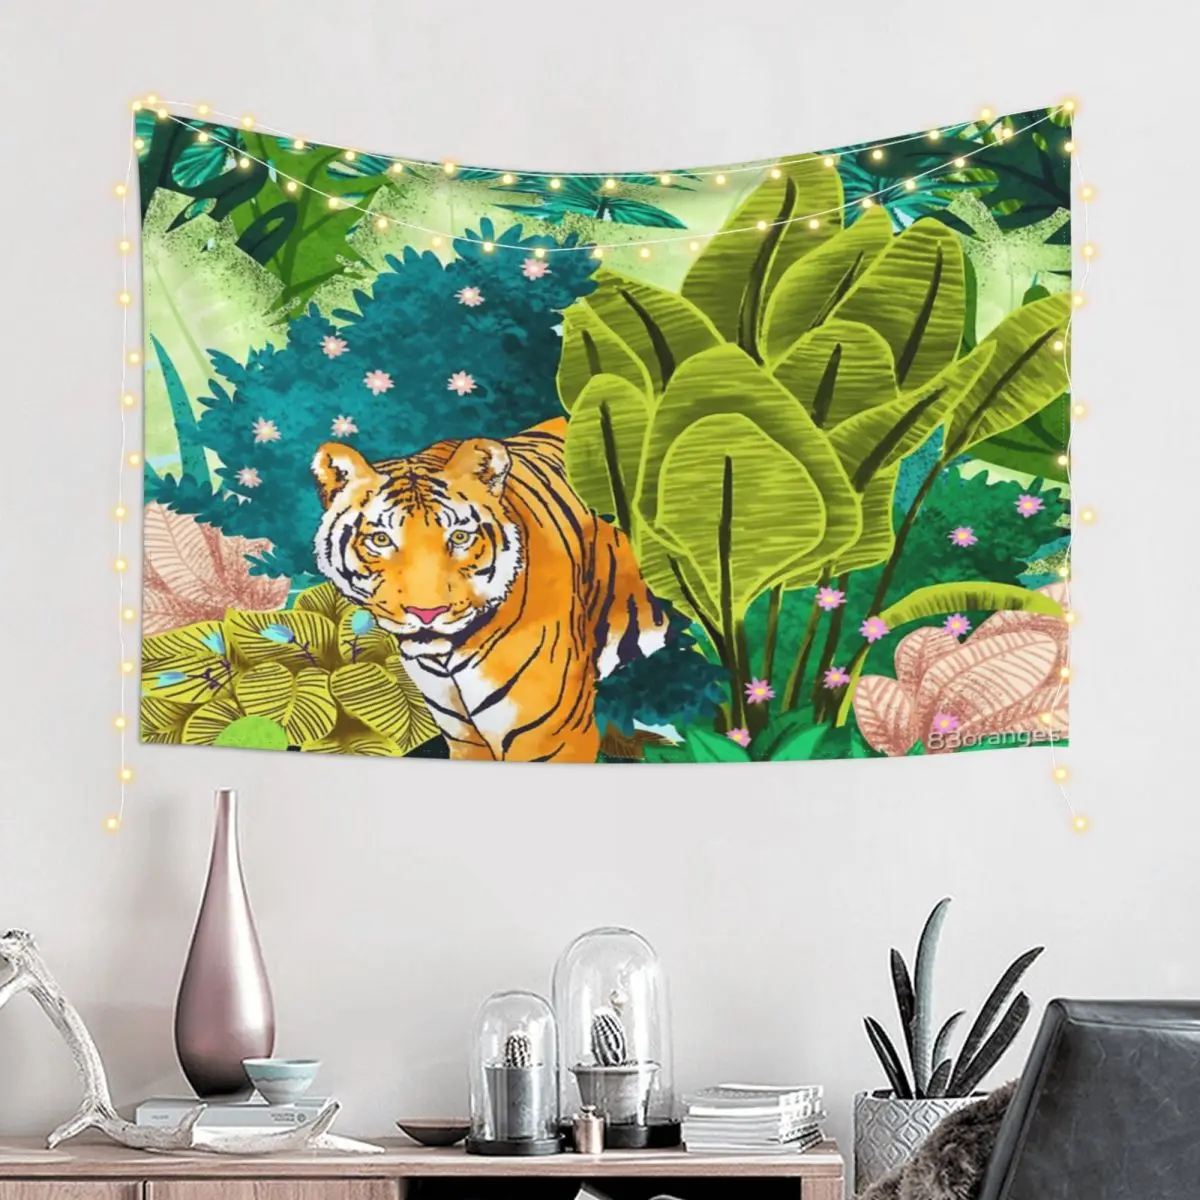 

Настенный декоративный гобелен Jungle Tiger с зажимами-зазубринами, подарок на день рождения, полиэстеровое покрывало без запаха, разные стили